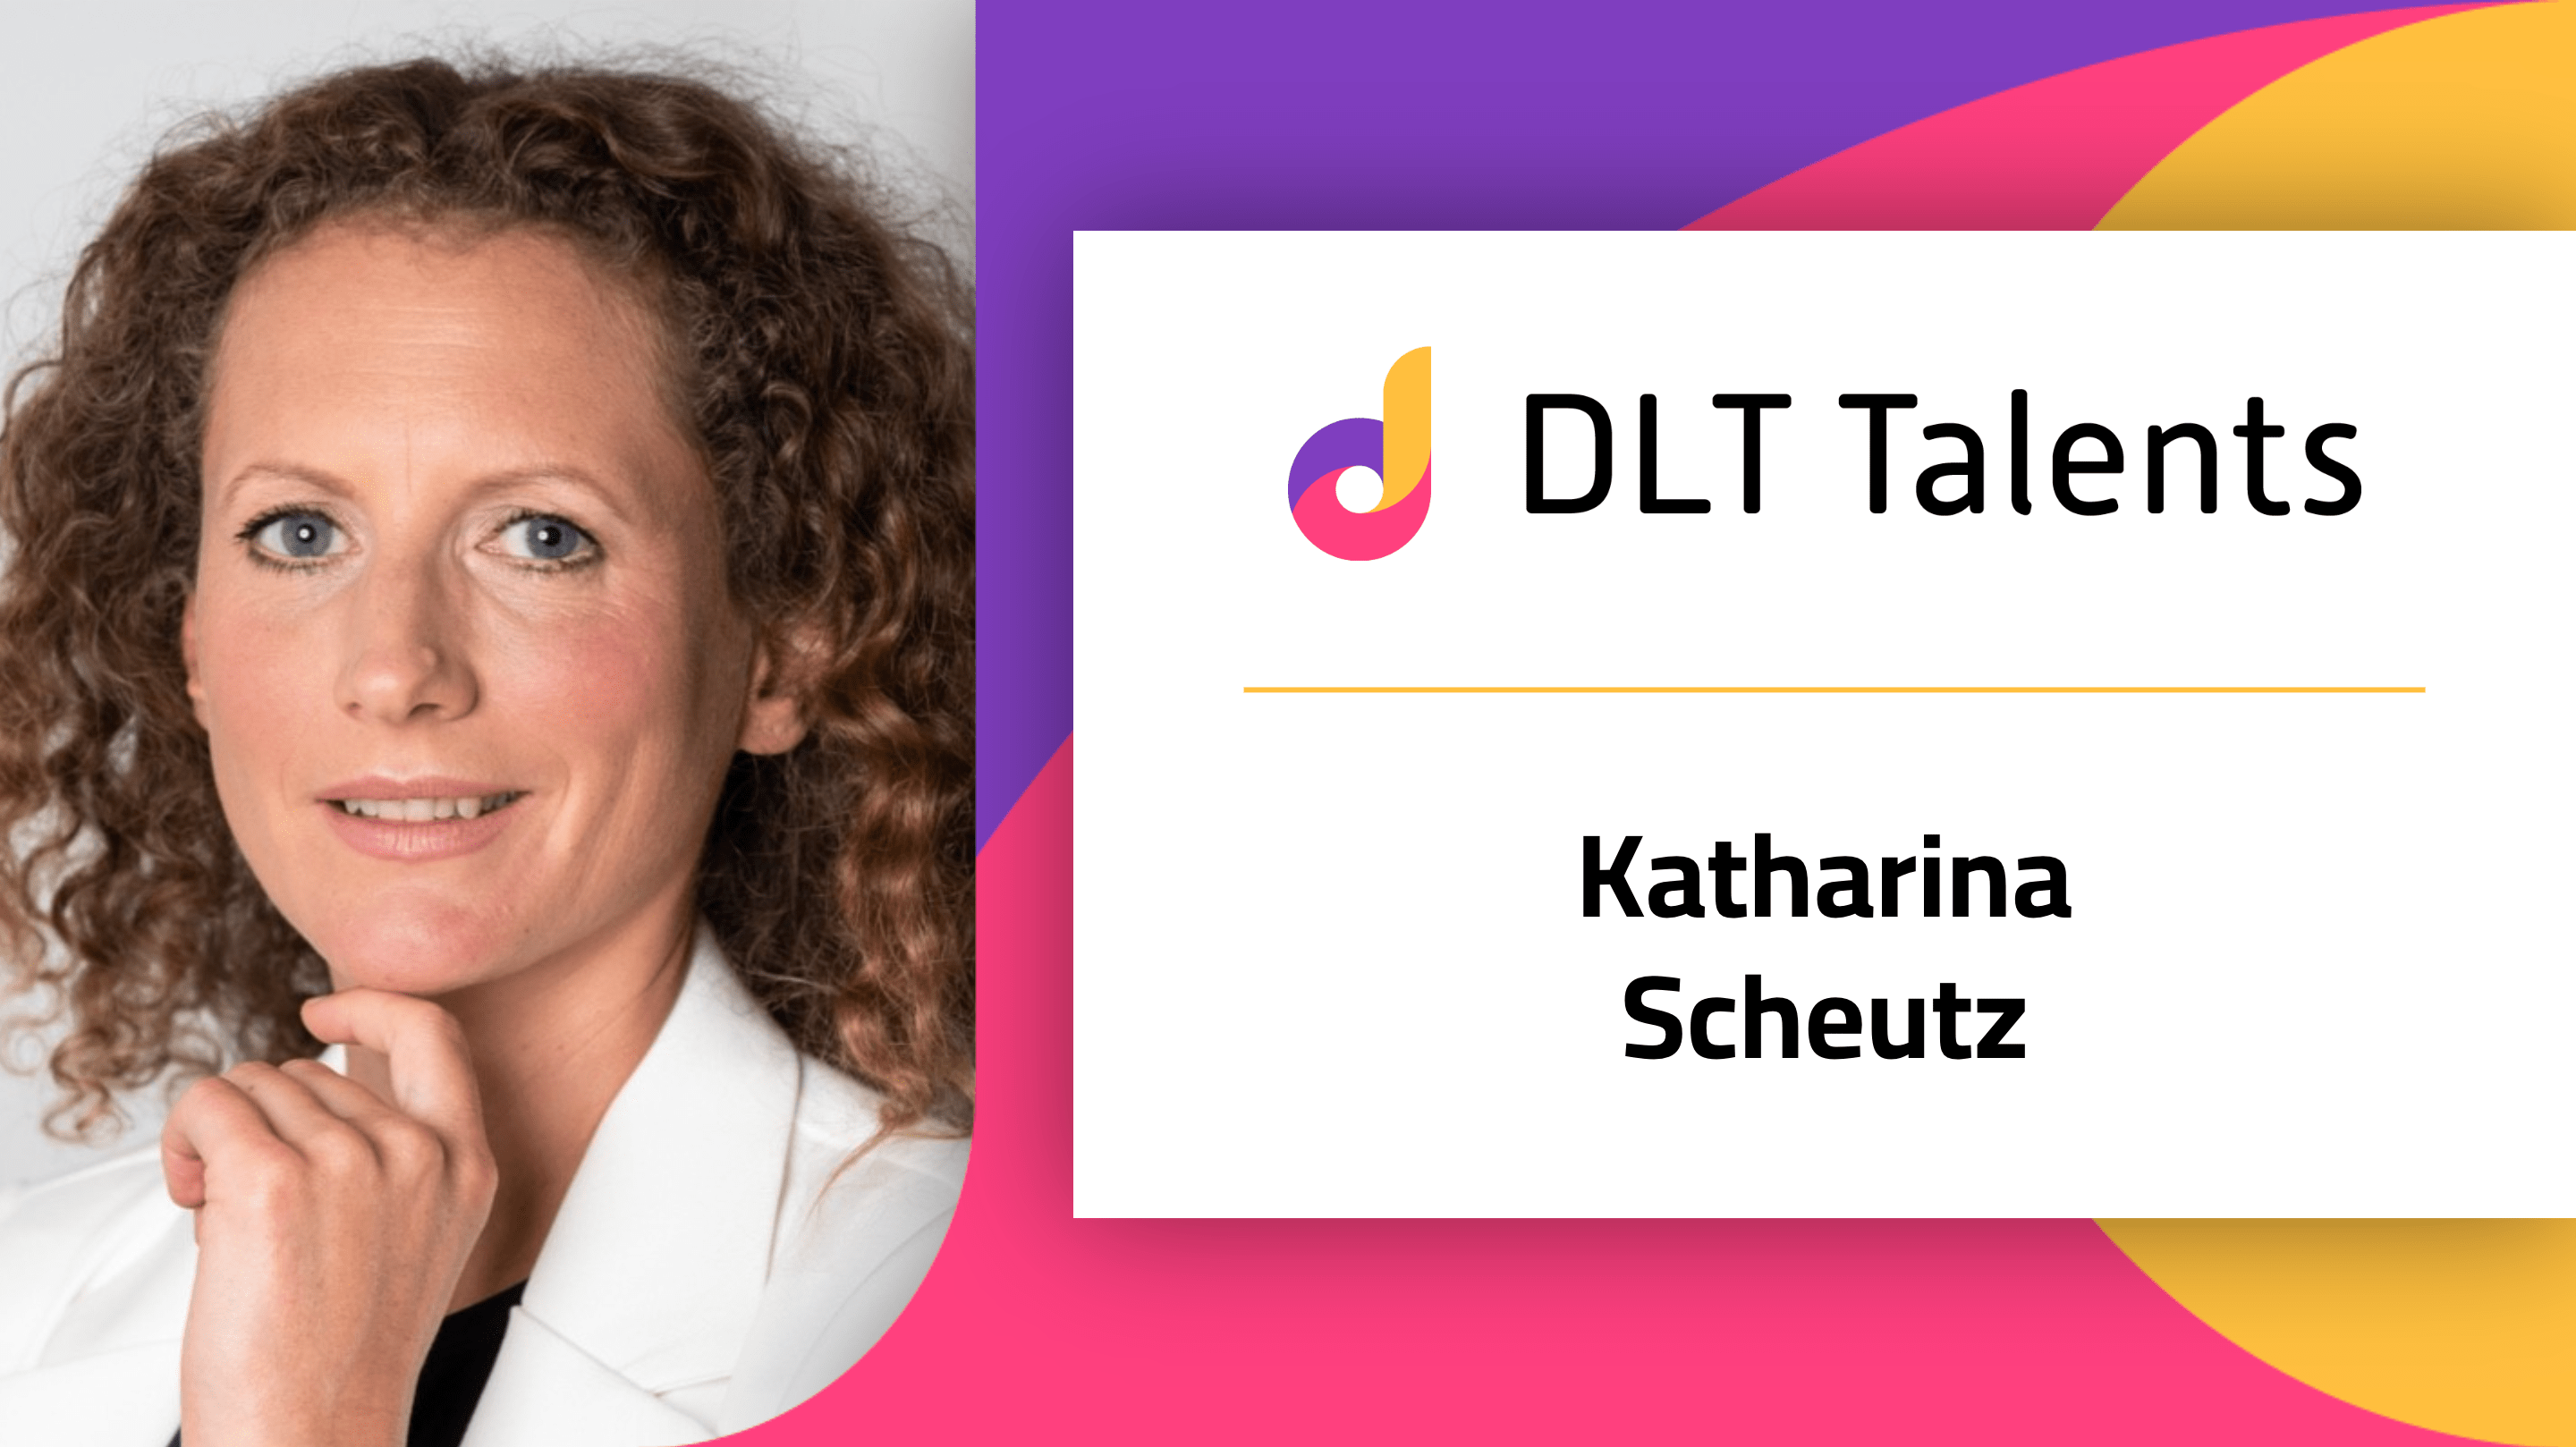 DLT Talents Mentor – Katharina Scheutz